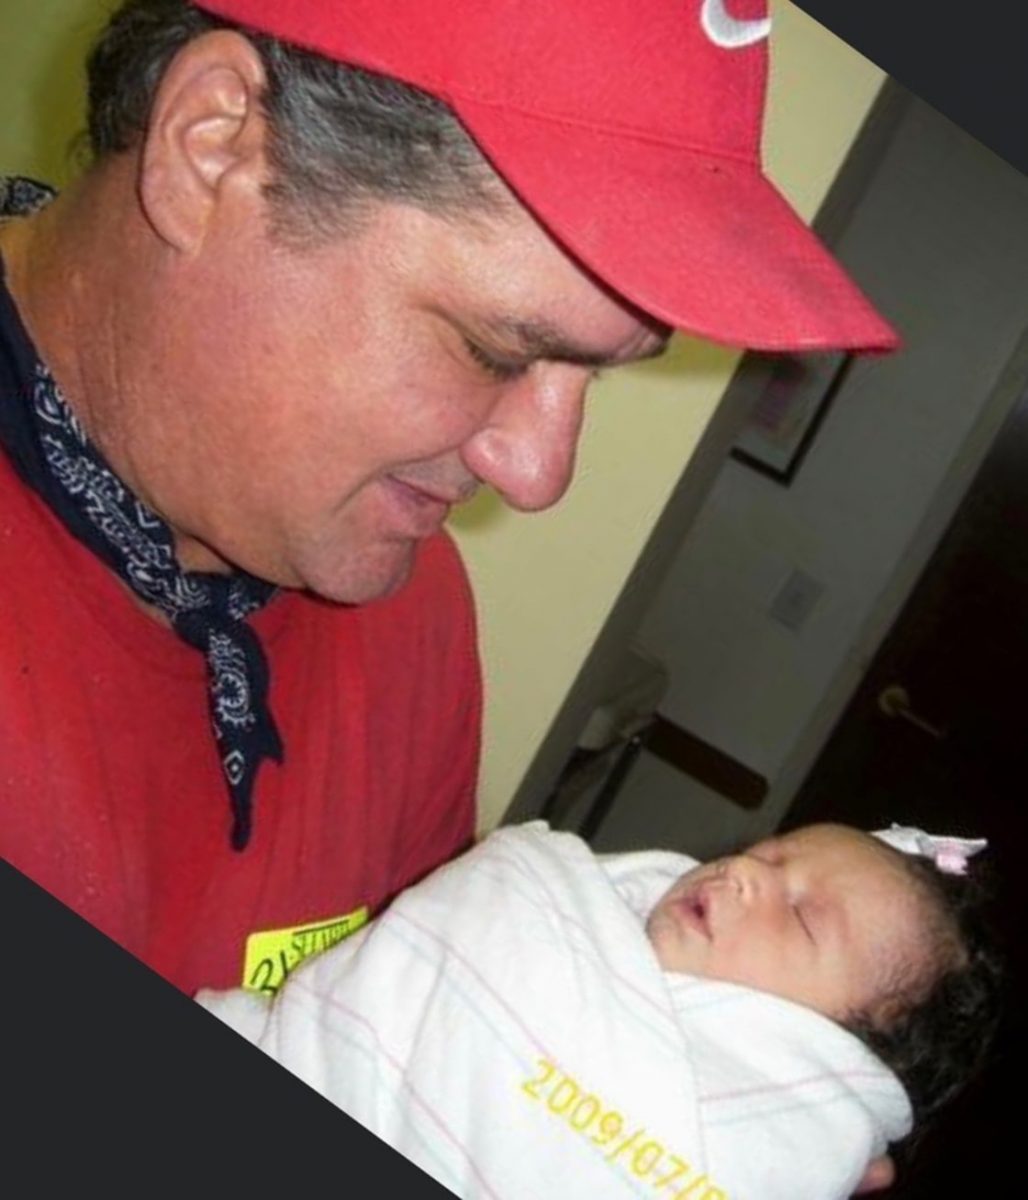 gravida ve pai falecido beijando seu bebe no ultrassom e imagem viraliza1 - Grávida acredita que pai falecido apareceu beijando seu bebê no ultrassom